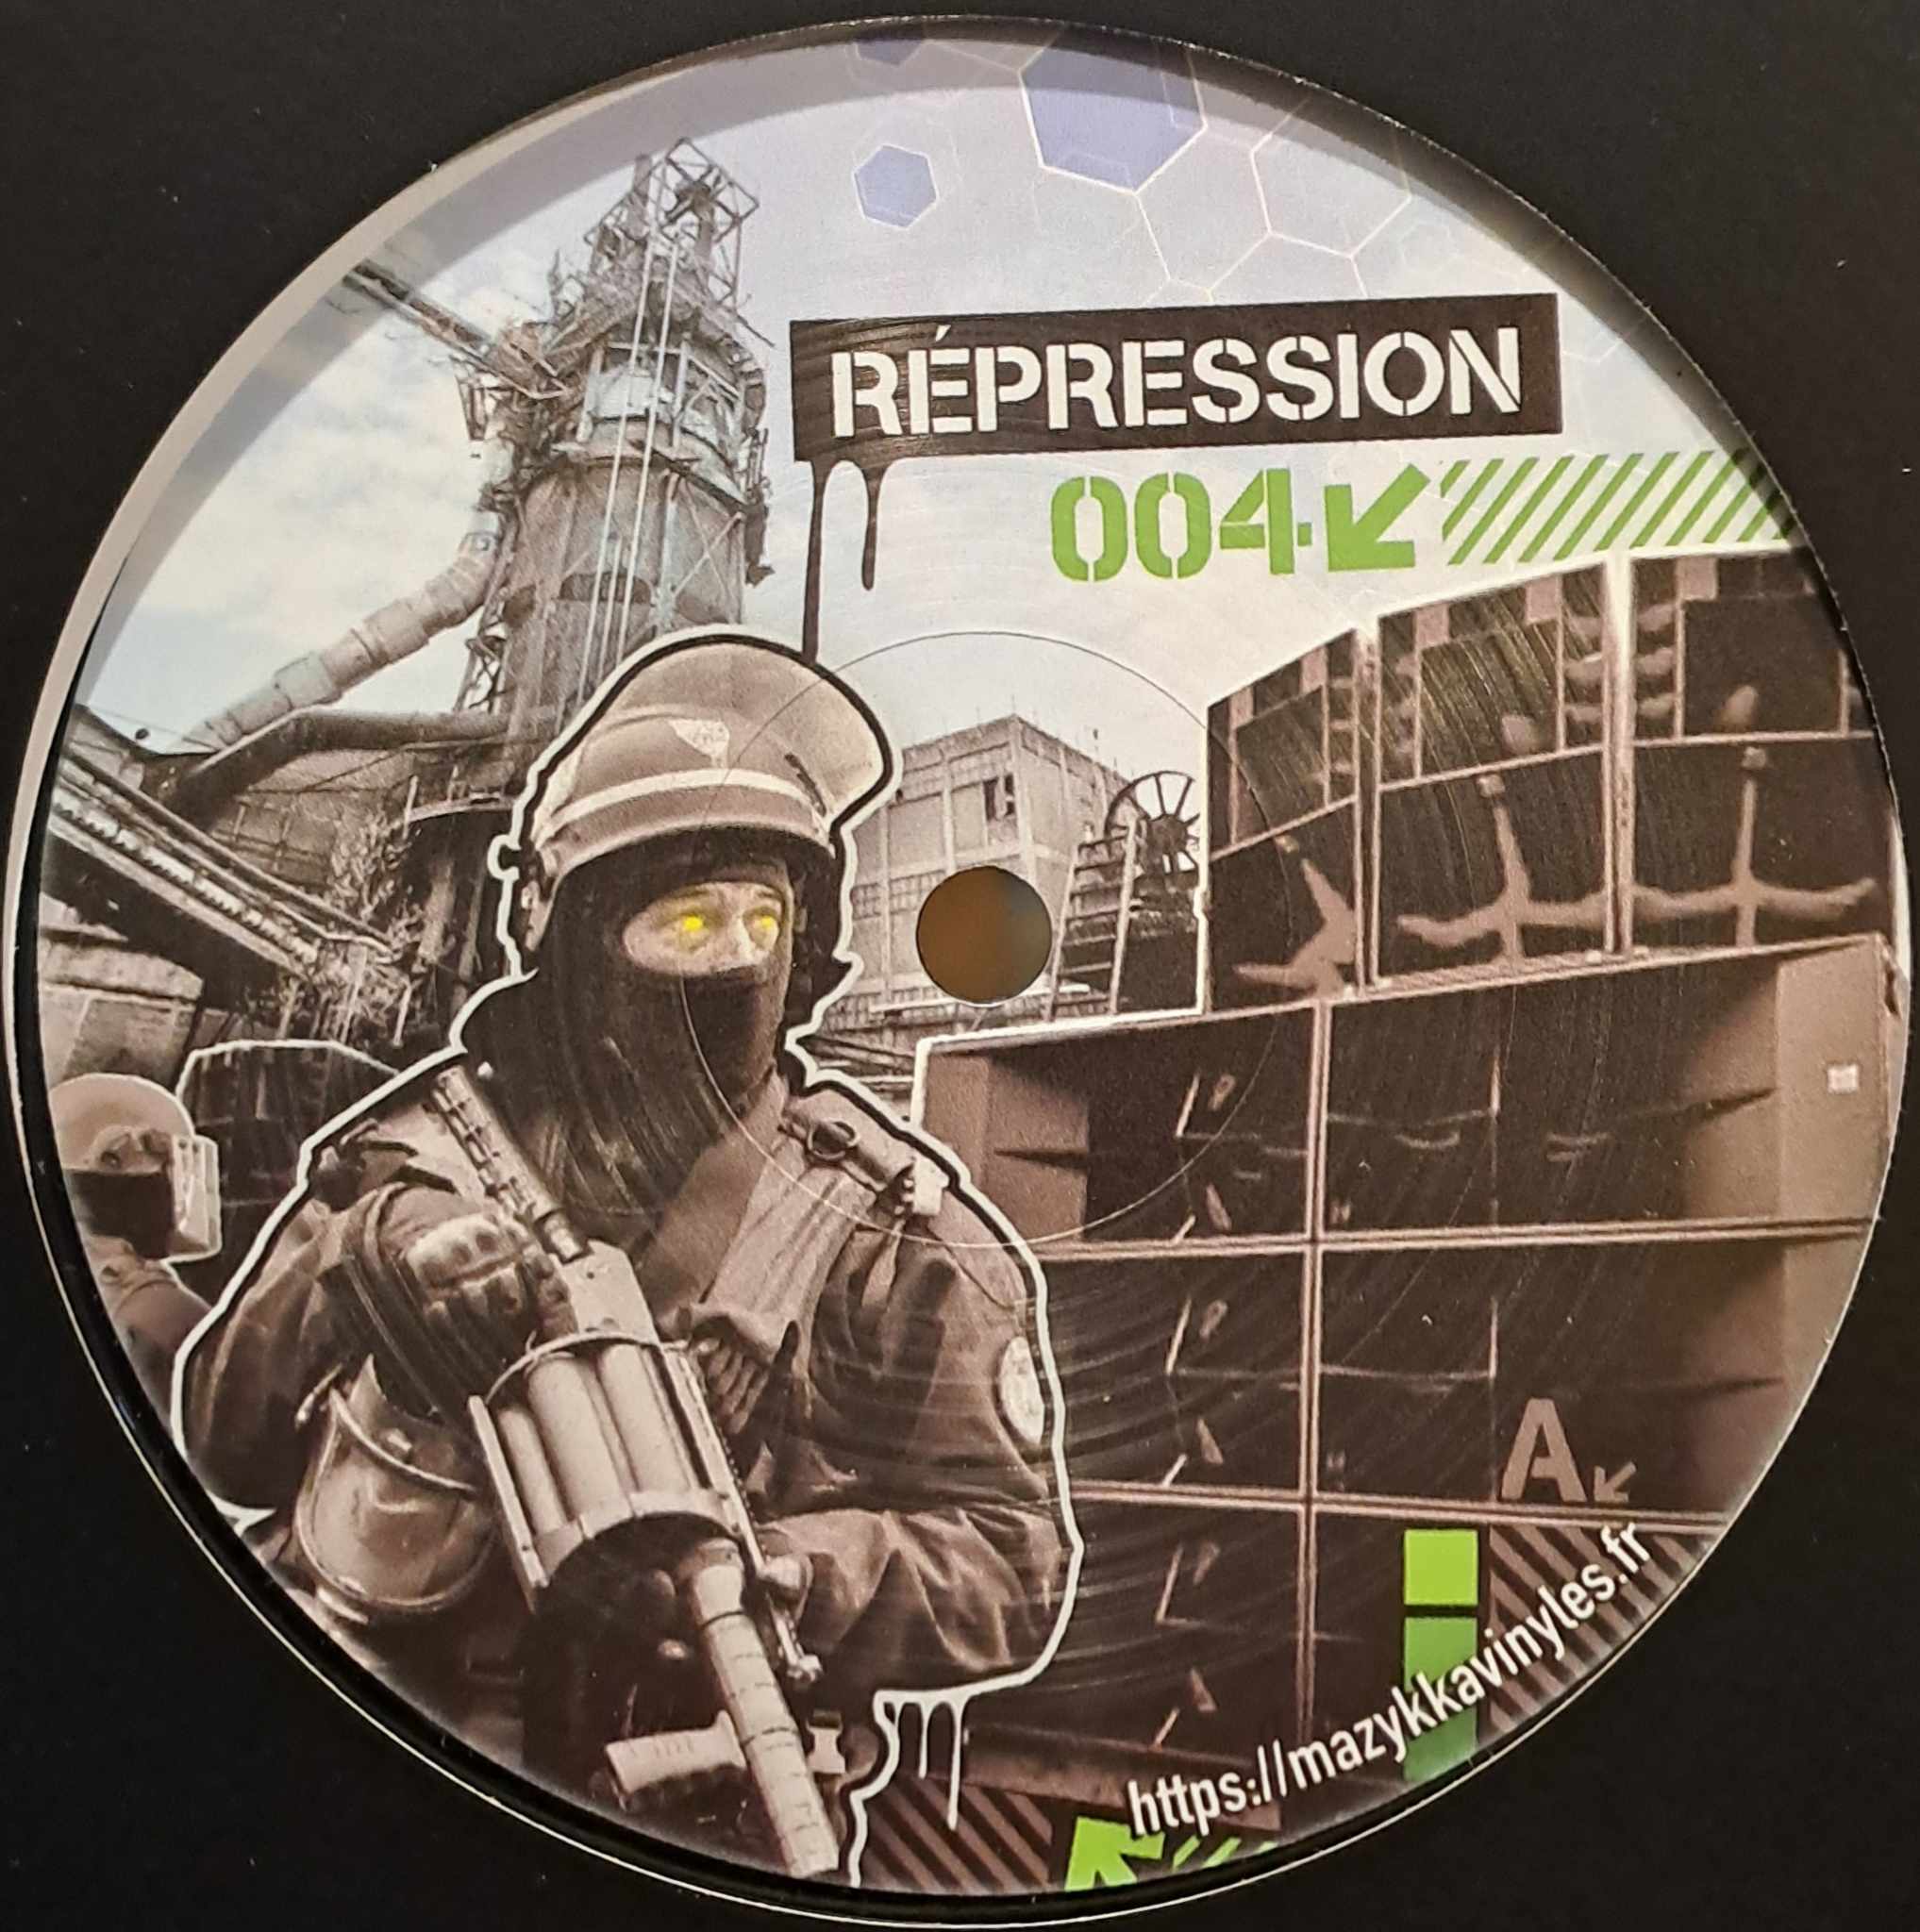 Répression 004 - vinyle hardcore